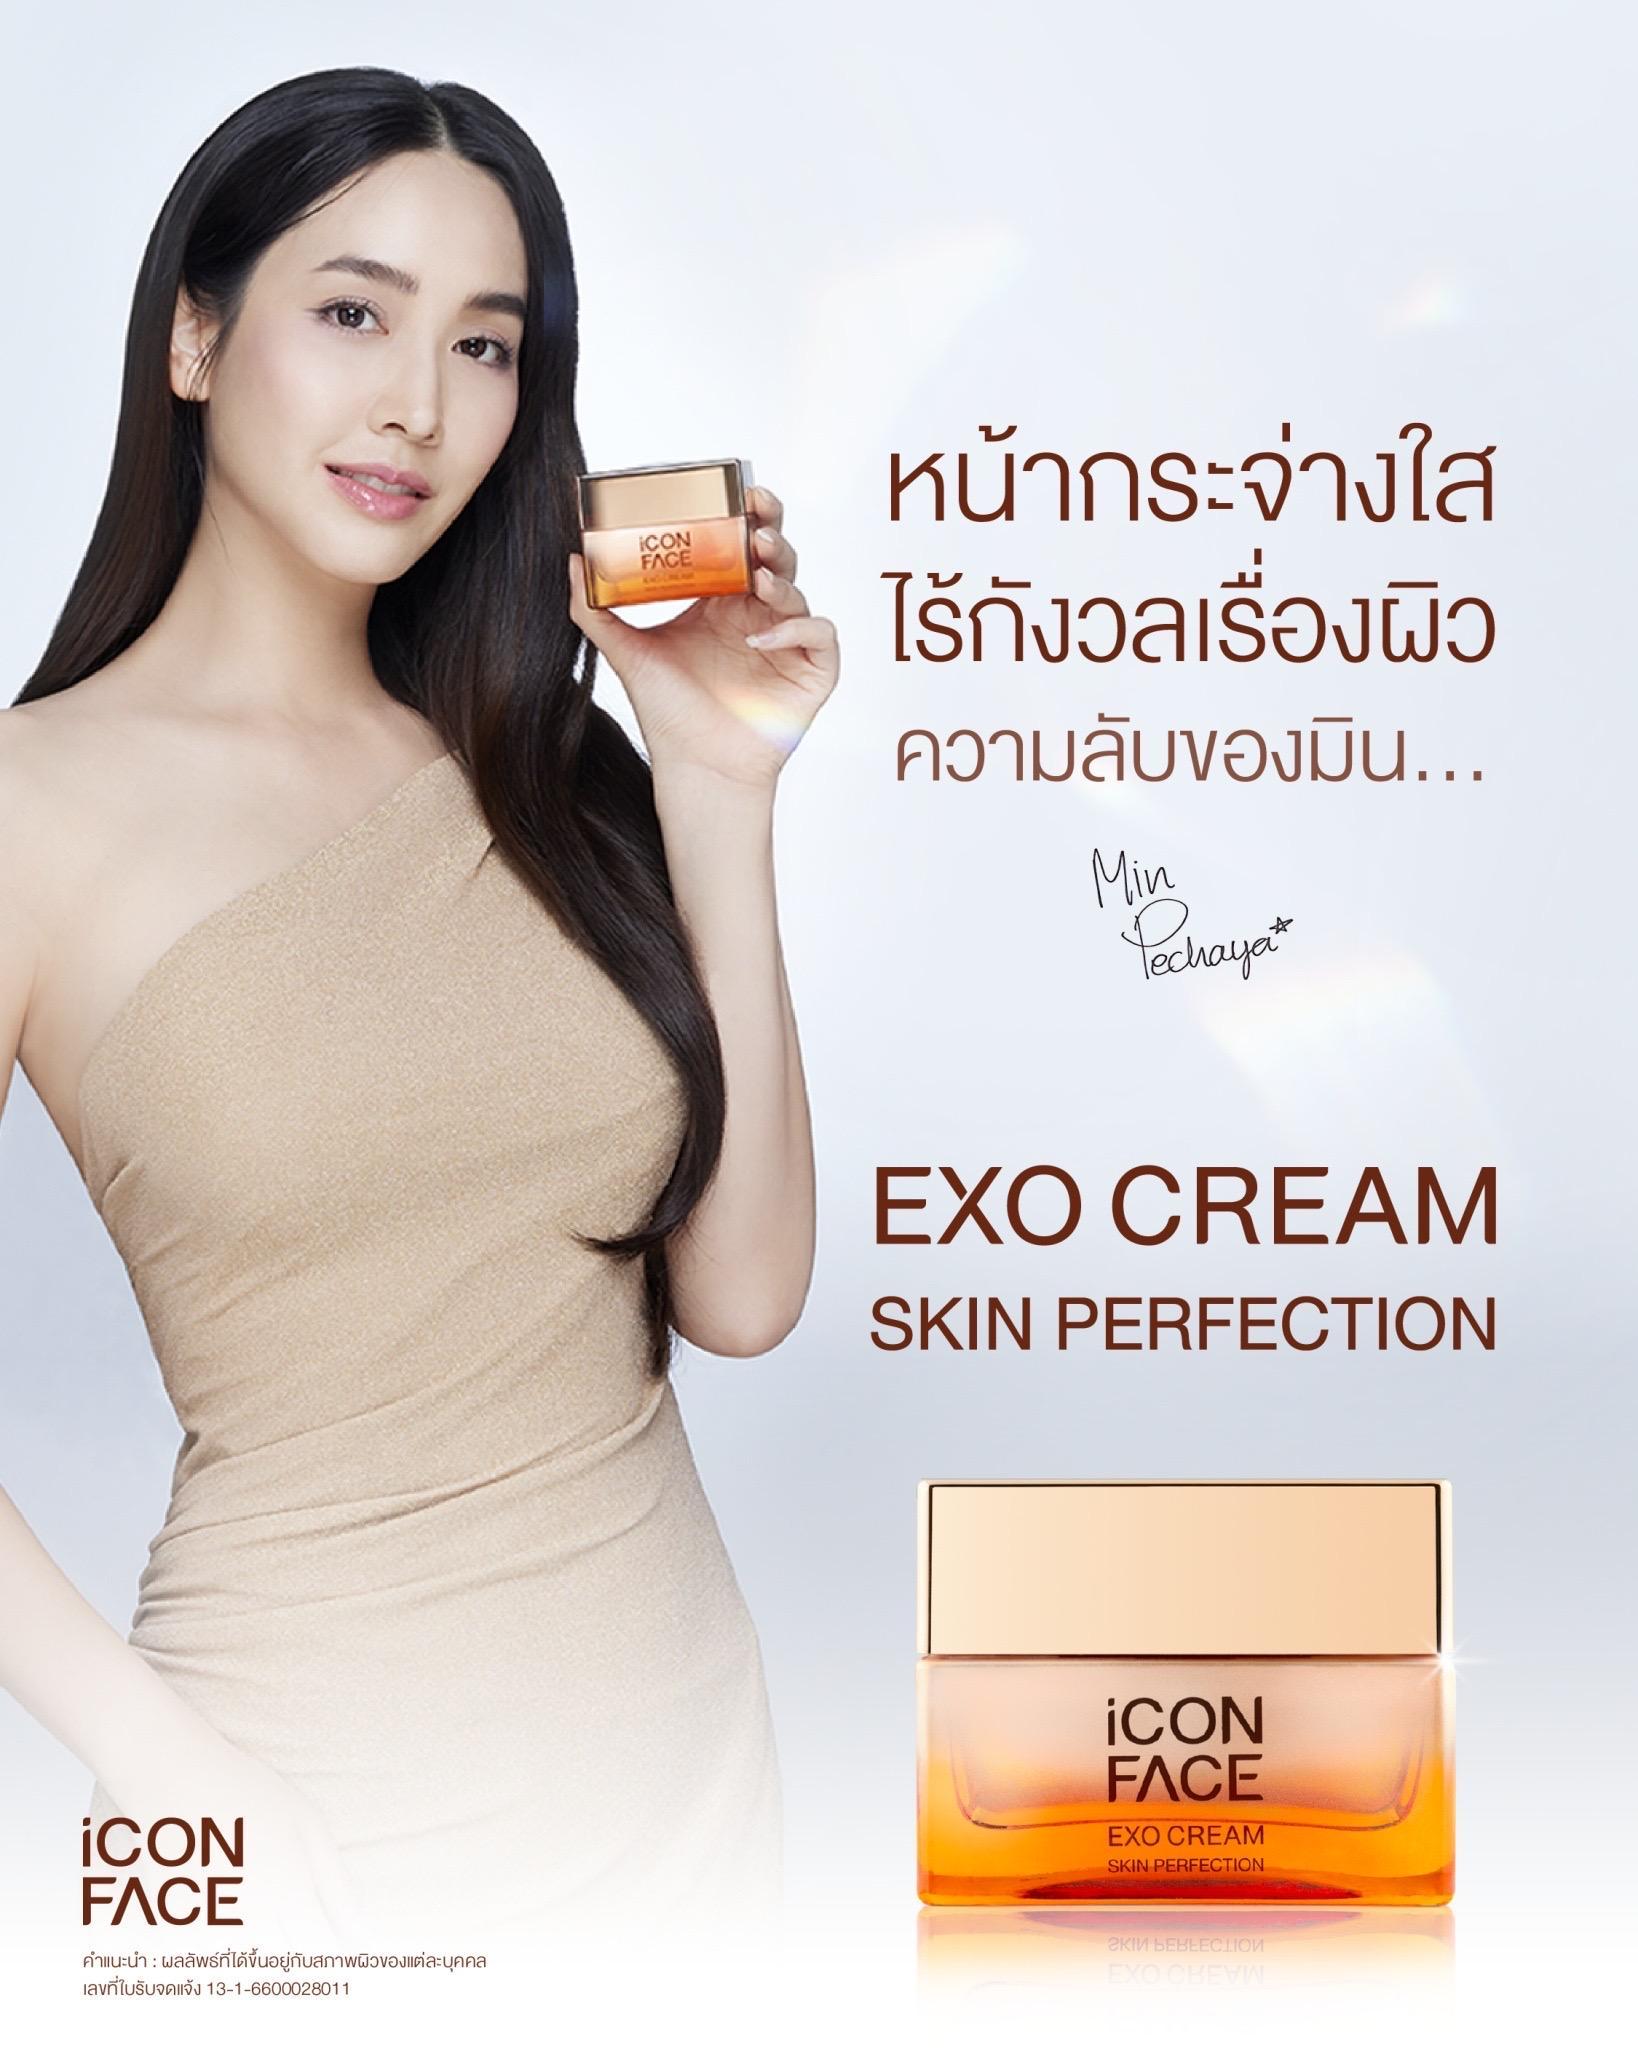 ภาพหน้าปก ครีมหน้าฉ่ำ iCon Face Exo Cream Skin Perfection ผลิตภัณฑ์ดูแลผิวหน้าเกรดพรีเมี่ยม ที่:2